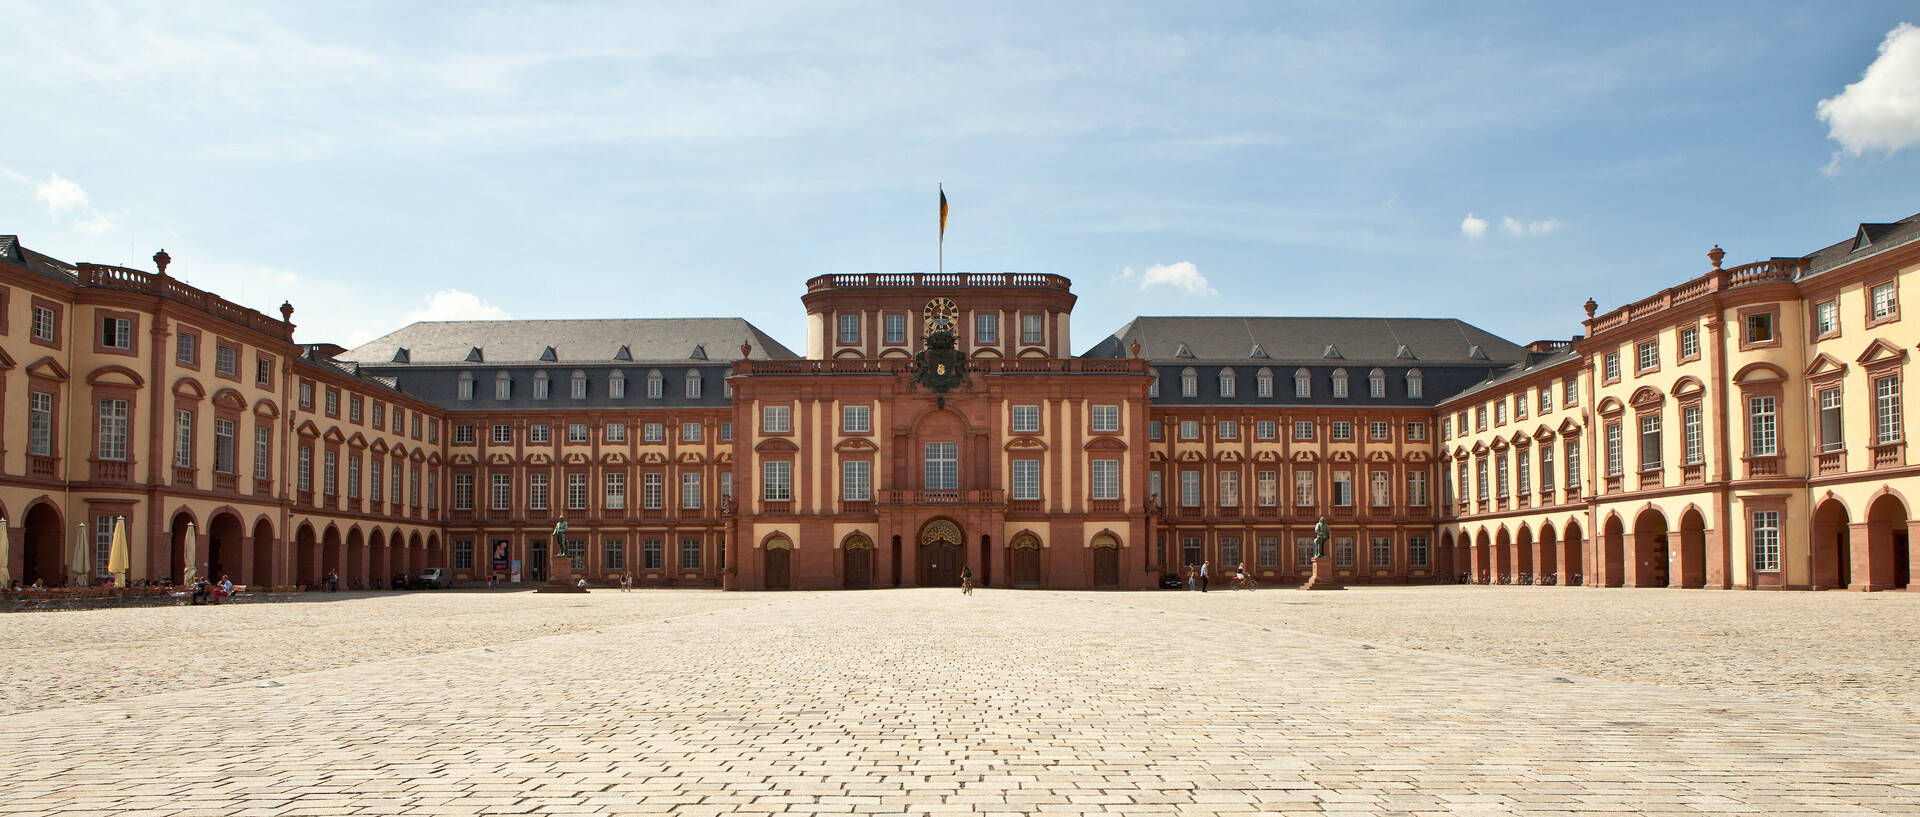 Das Mannheimer Barockschloss und der Ehrenhof unter blauem Himmel.